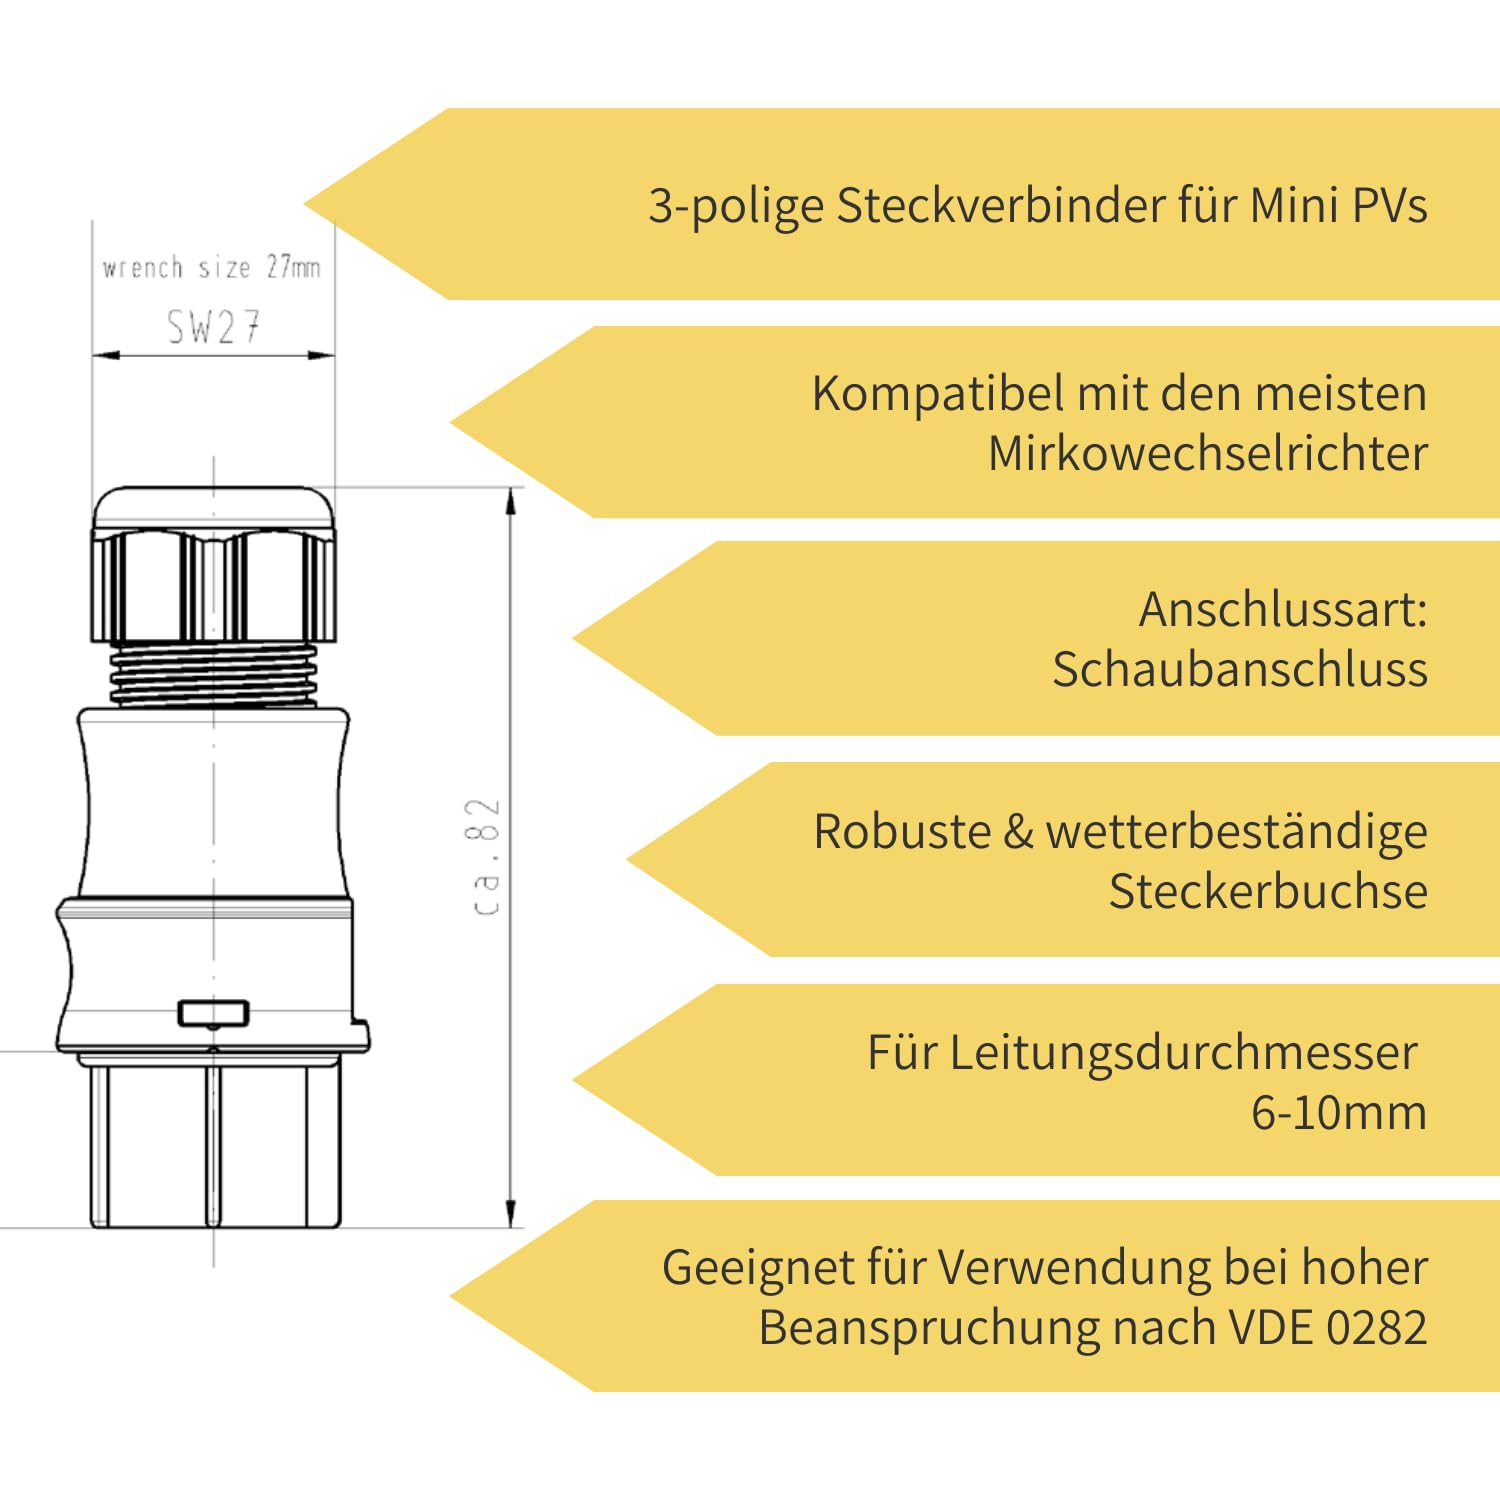 Wieland Steckverbinder Buchse 3-polig // 96.031.4053.1 // RST20I3S B1 ZR1 SW Produktinformationen